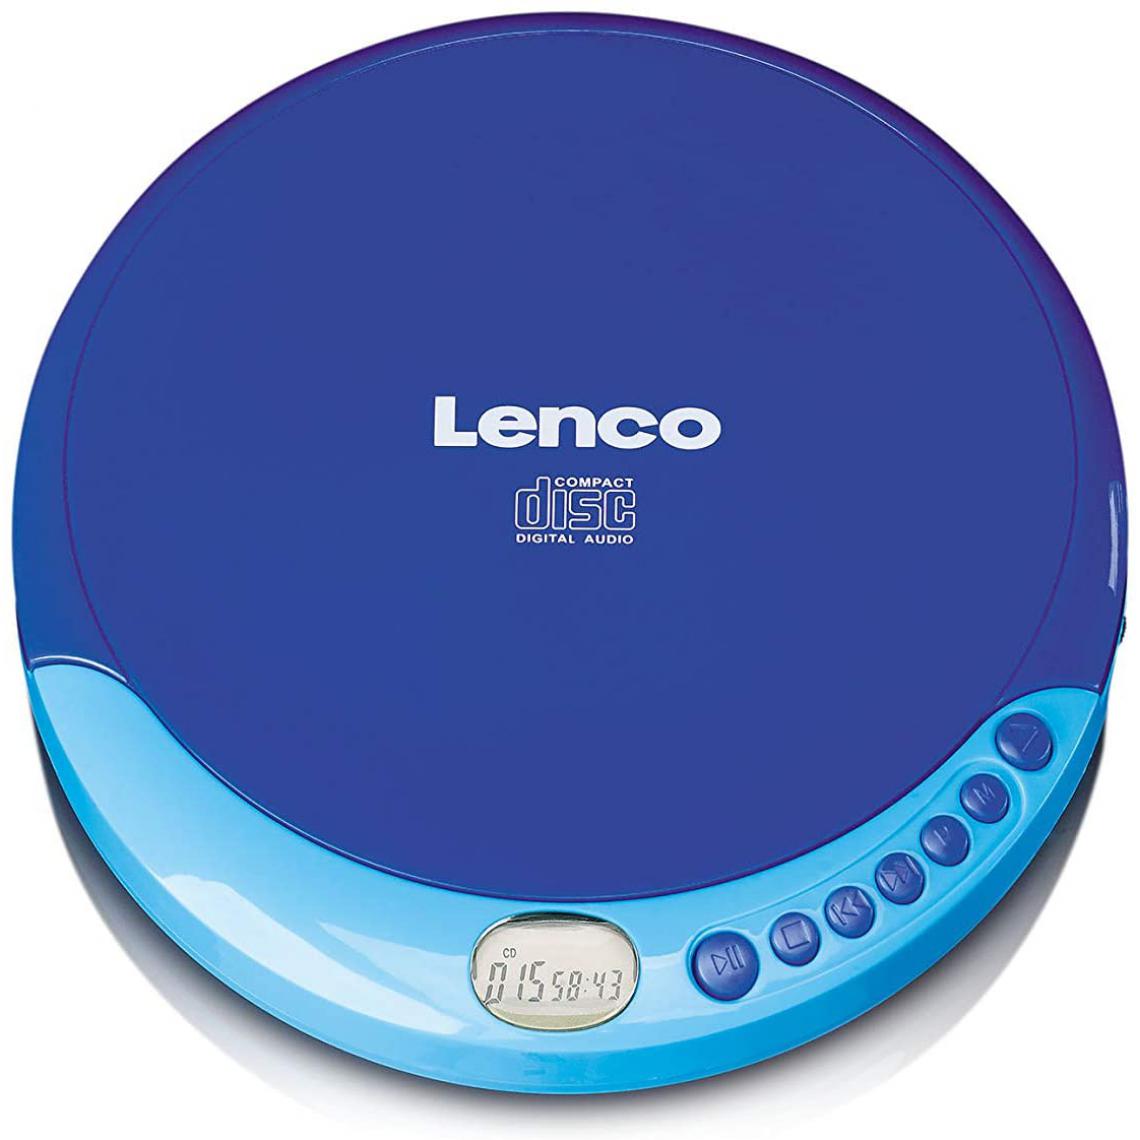 Lenco - lecteur CD Portable MP3 avec écran LCD bleu - Radio, lecteur CD/MP3 enfant